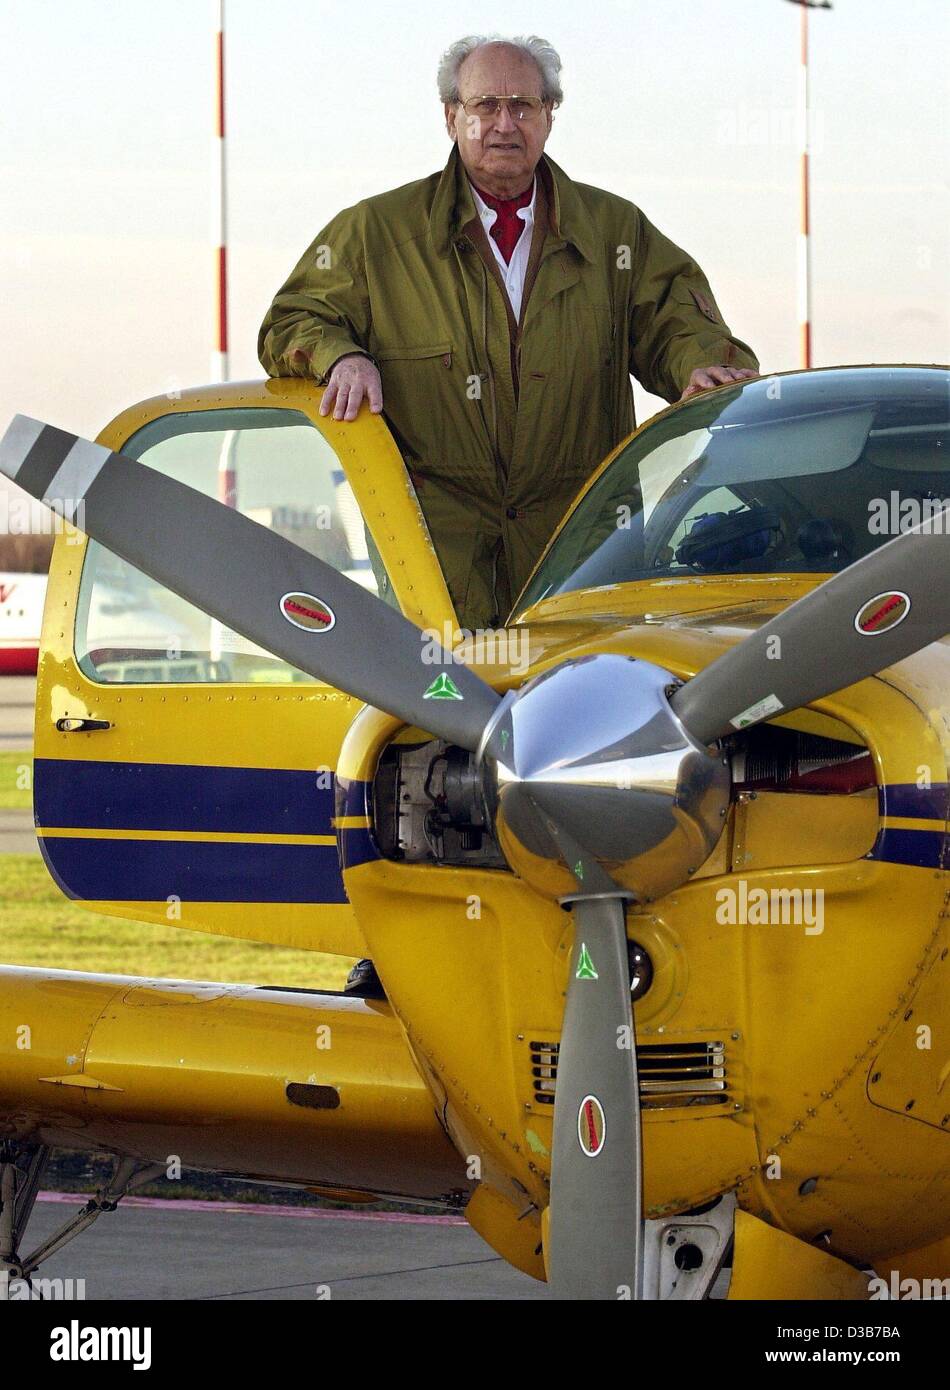 (Afp) - Peter Jehle monte son avion à hélice type hêtre 33 à l'aérodrome à Hambourg, le 27 novembre 2002. Le 80-year-old fonctionne toujours comme un vol instructior avec cet avion, et souhaite continuer aussi longtemps qu'il le pourra. Banque D'Images